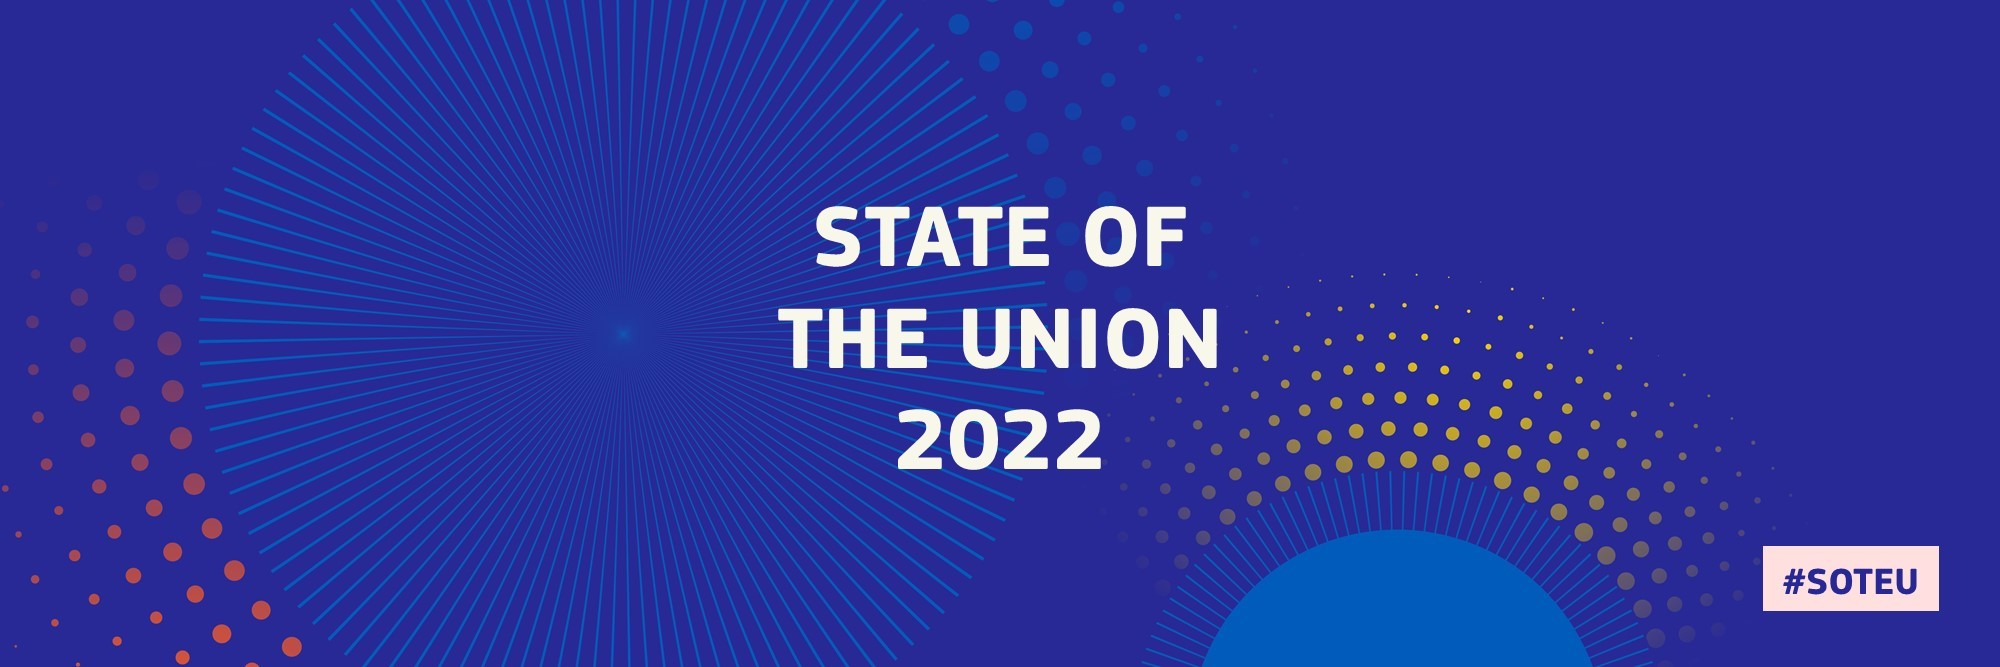 abstrakte Abbildung zur Lage der Union 2022 #SOTEU2022